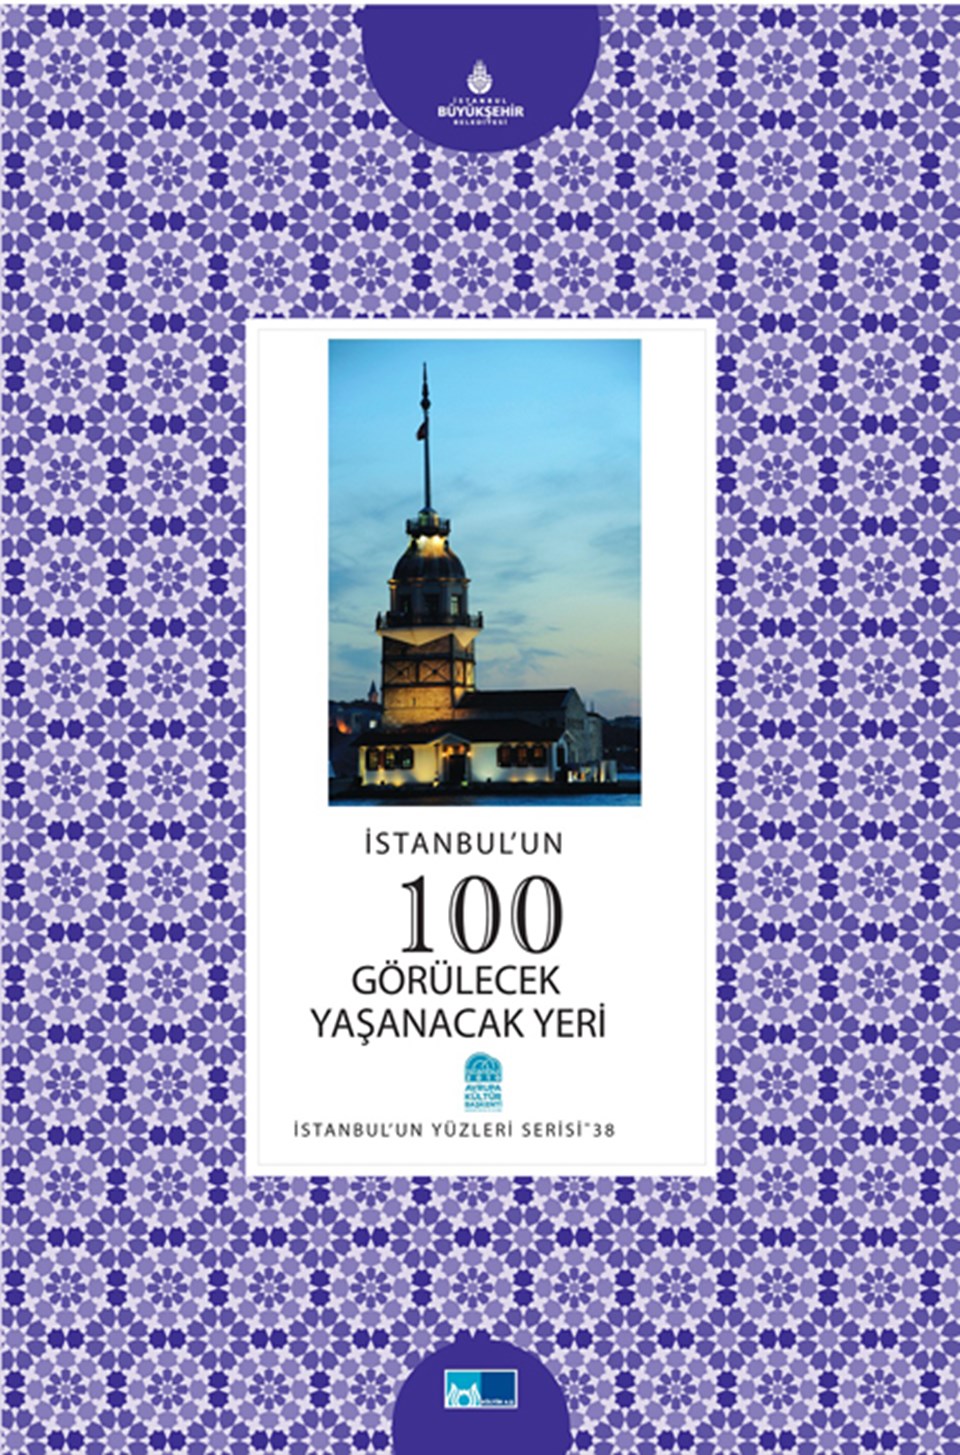 İstanbul’un 100 görülecek, yaşanacak yeri - 2